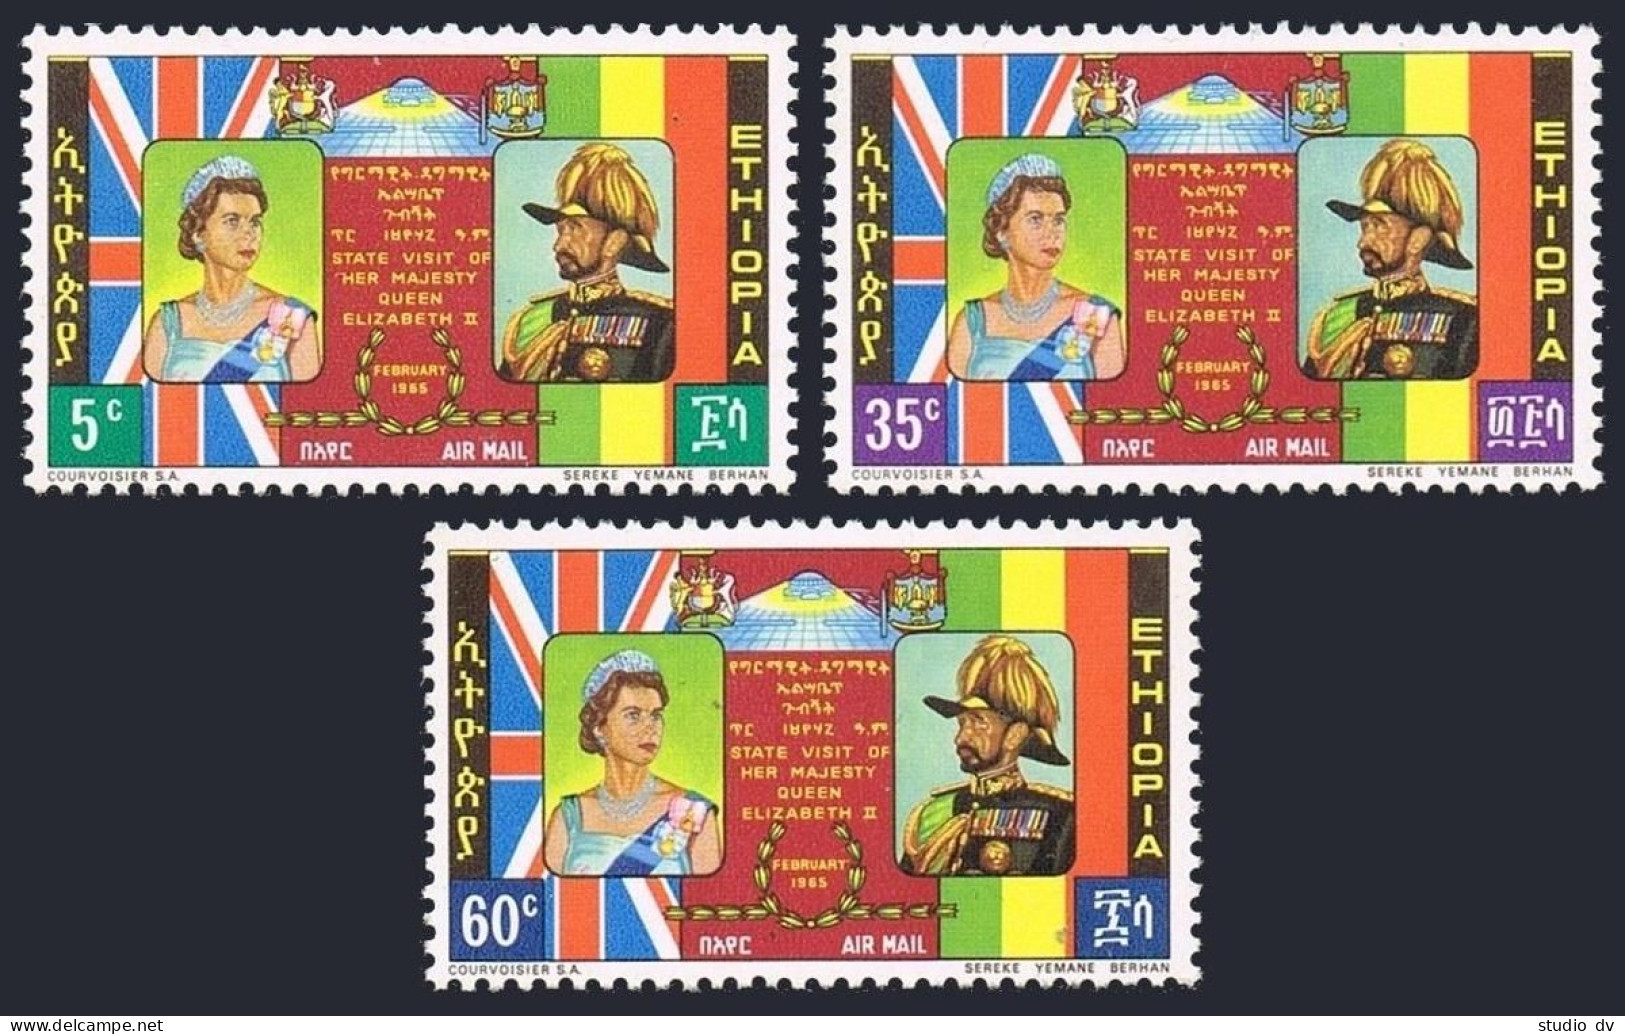 Ethiopia C86-C88, MNH. Mi 492-494. Visit Of Queen Elizabeth II, 1965. Emperor. - Ethiopia